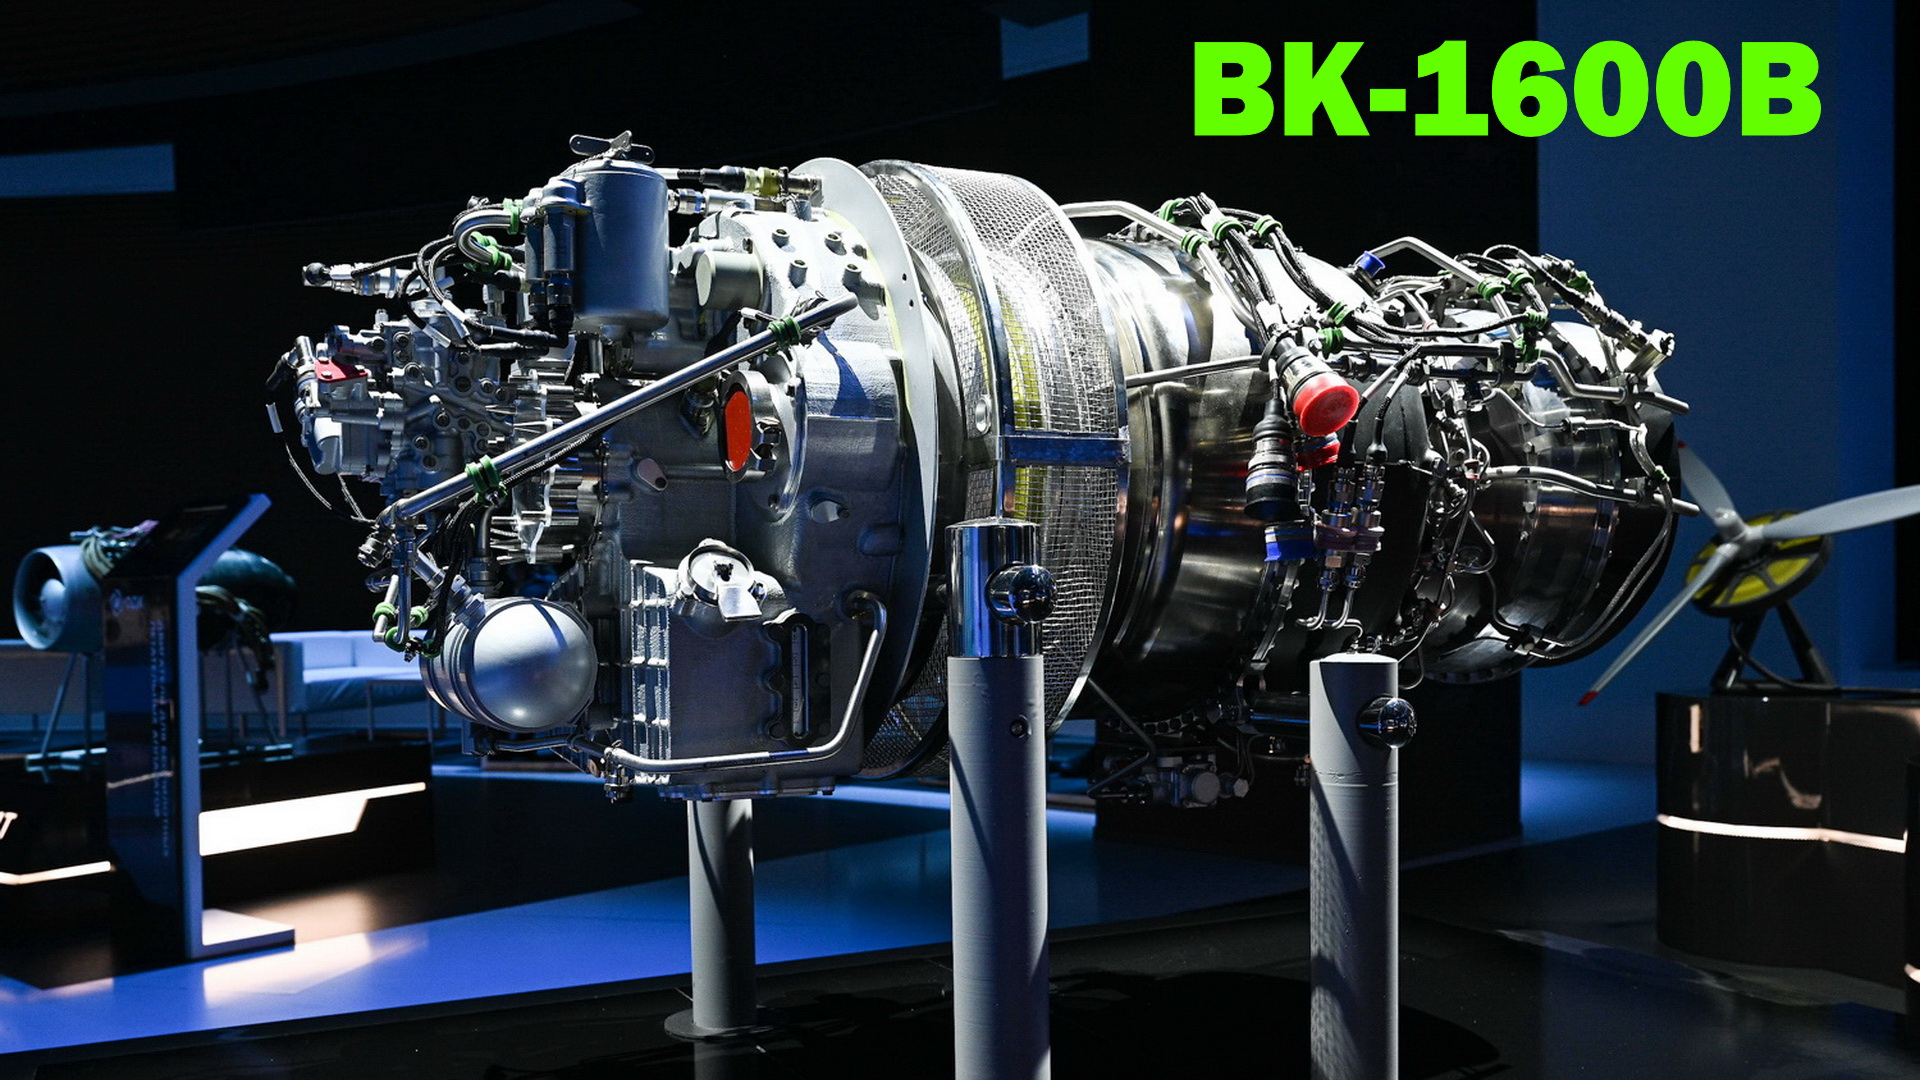 Вк 650. ВК-1600в двигатель. ОДК Климов двигатели. РД-600в - турбовальный двигатель. ТВД ВК-1600в.